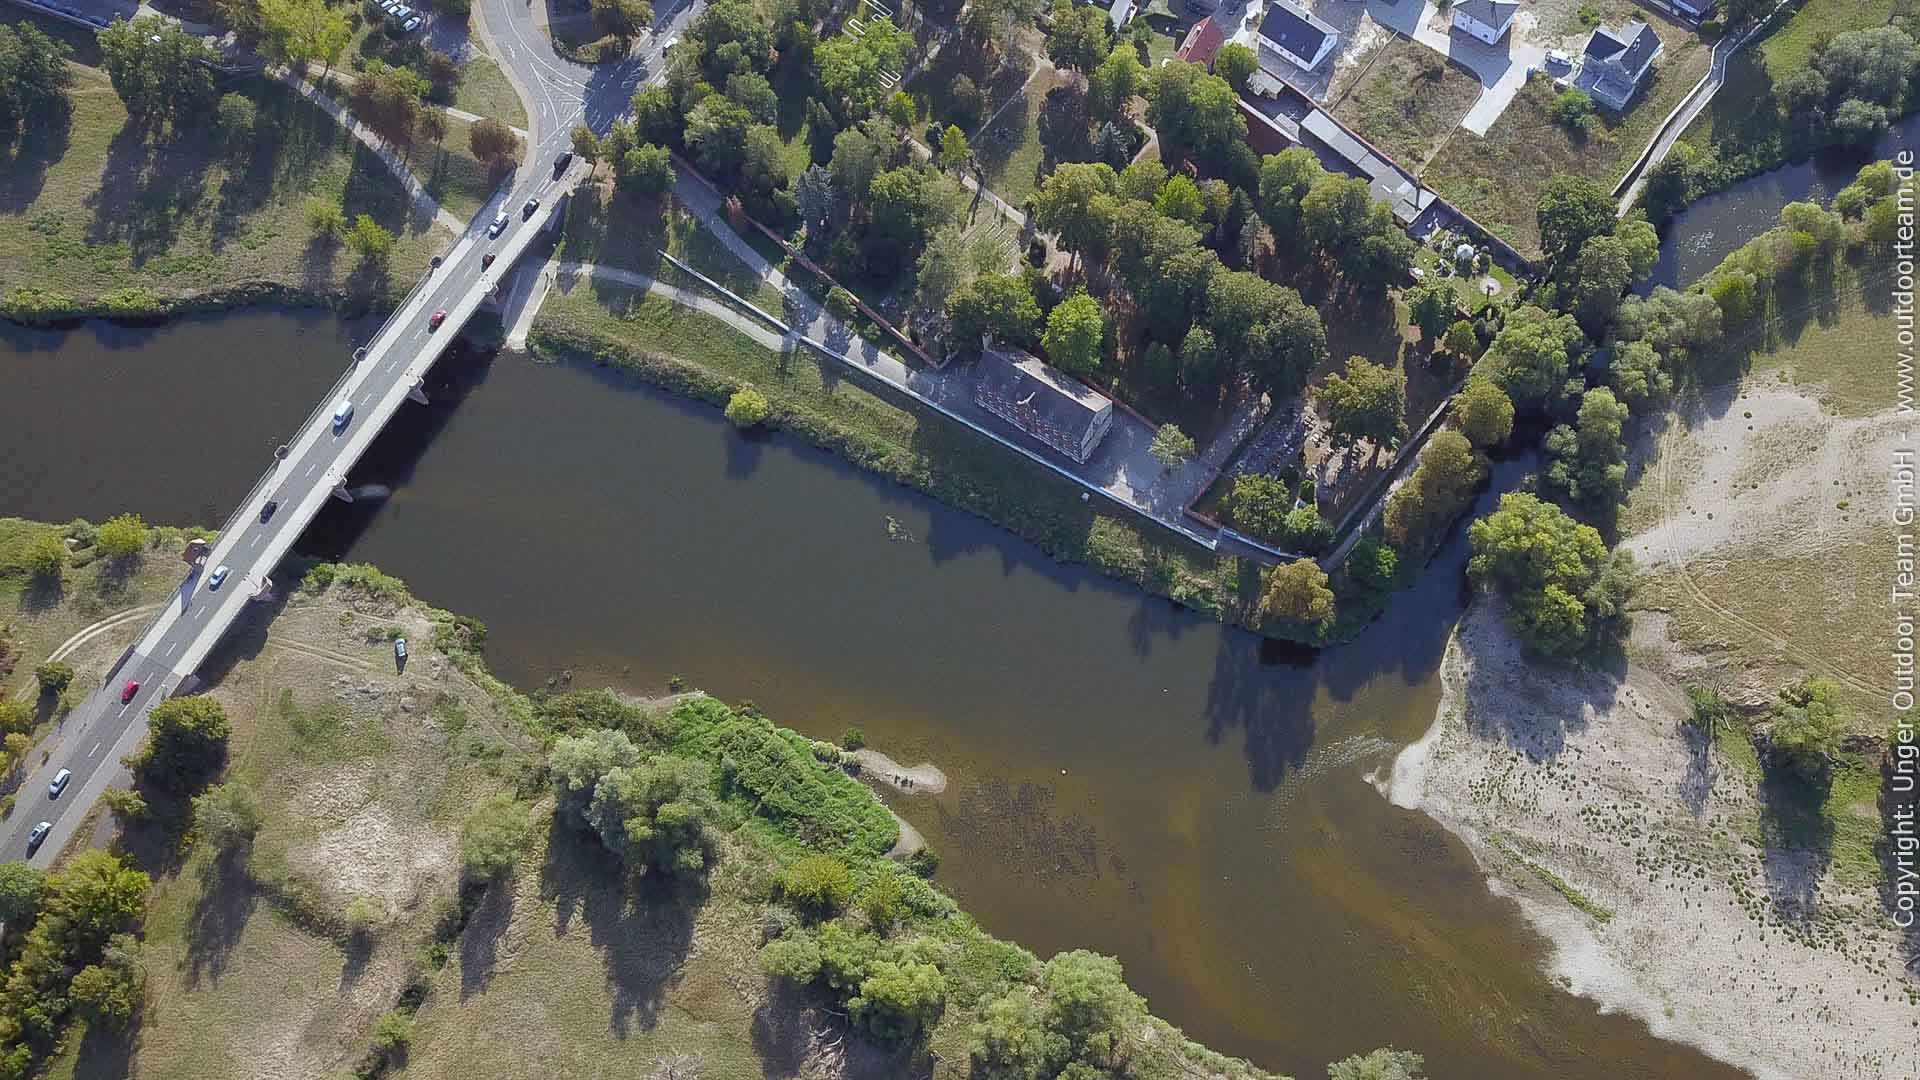 Tourende der 3-Tage Paddelstrecke M - Luftbild der Muldenbrücke und der Bootsaussatzrampe in Eilenburg. Gut erkennt man die Mündung des Eilenburger Mühlgraben.